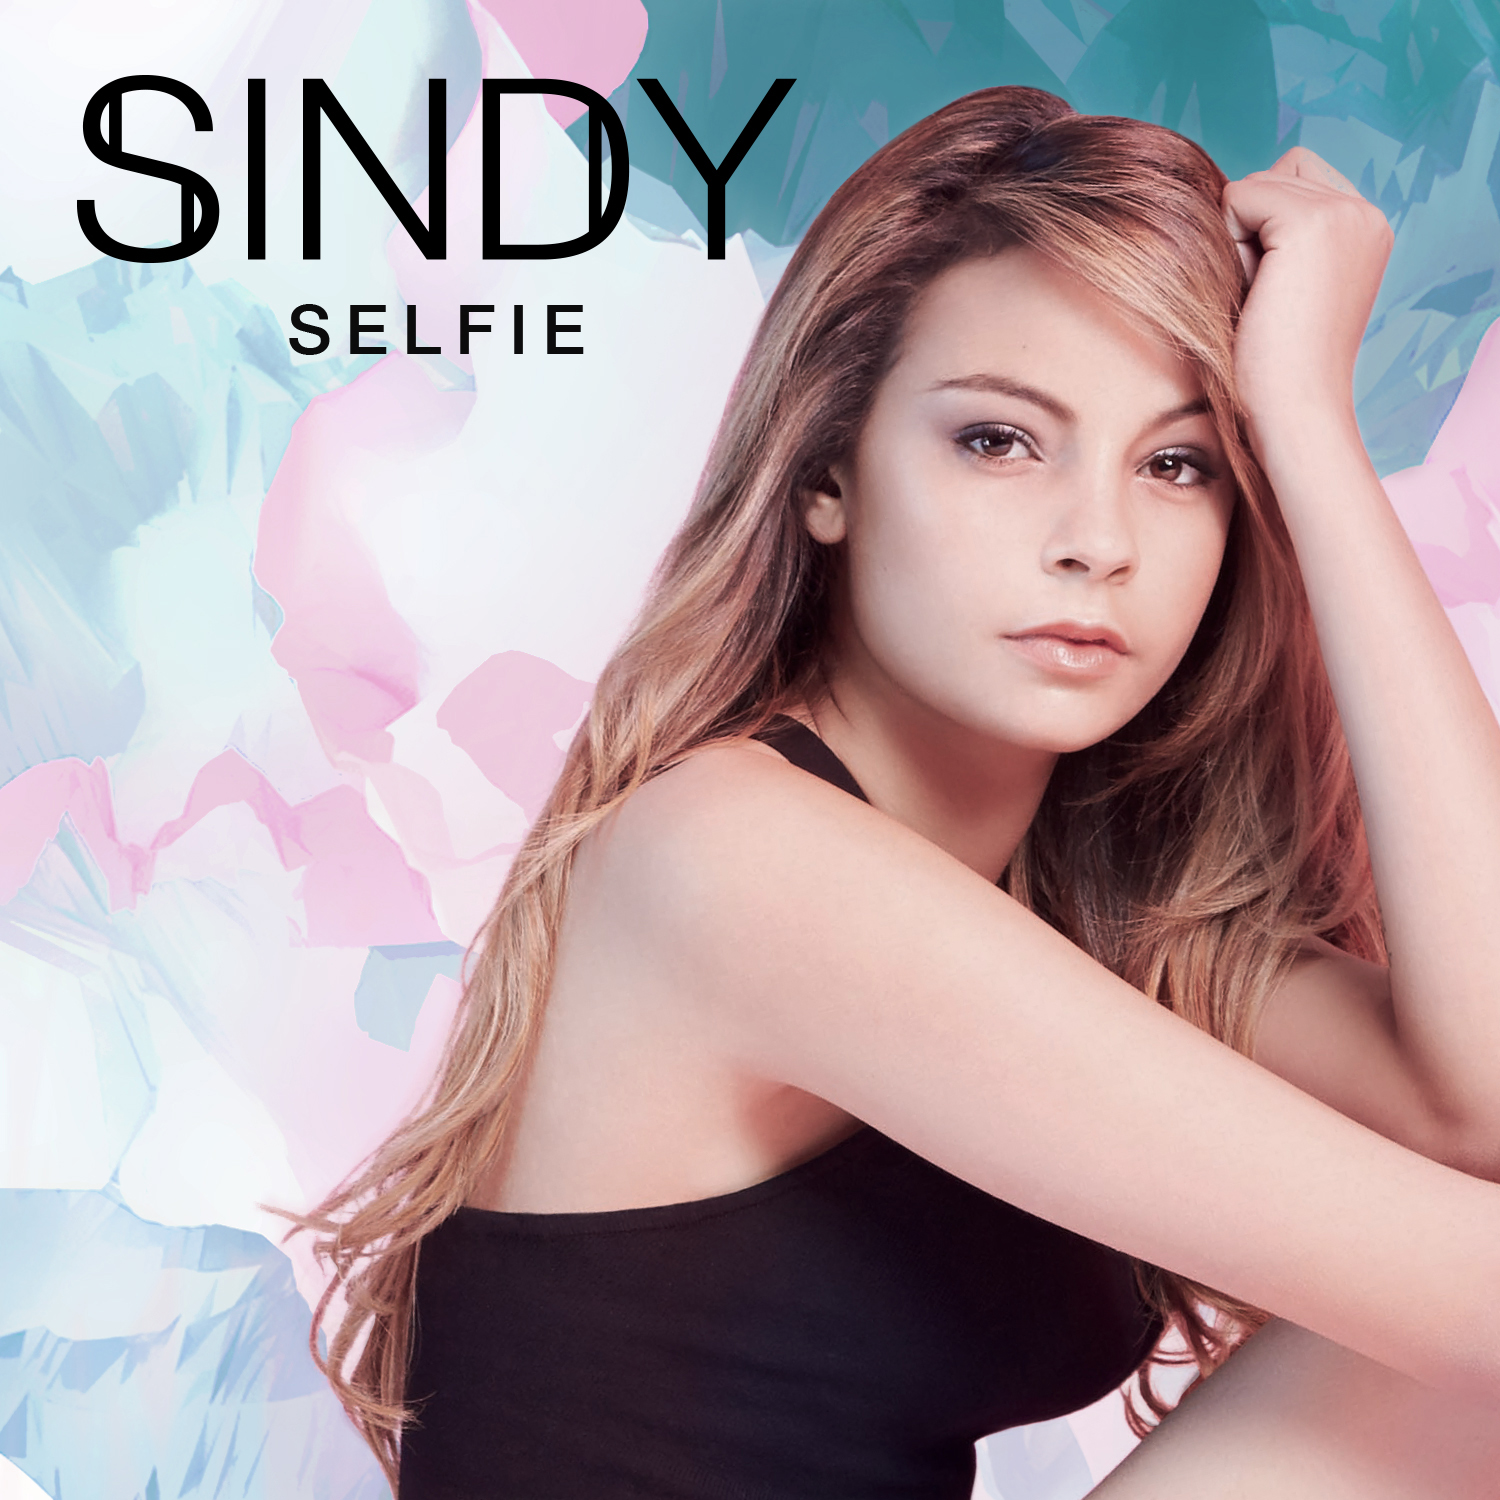 Sindy Sindy La Voix Féminine De Team Bs Sort Son Premier Album Solo Selfie Sony Music